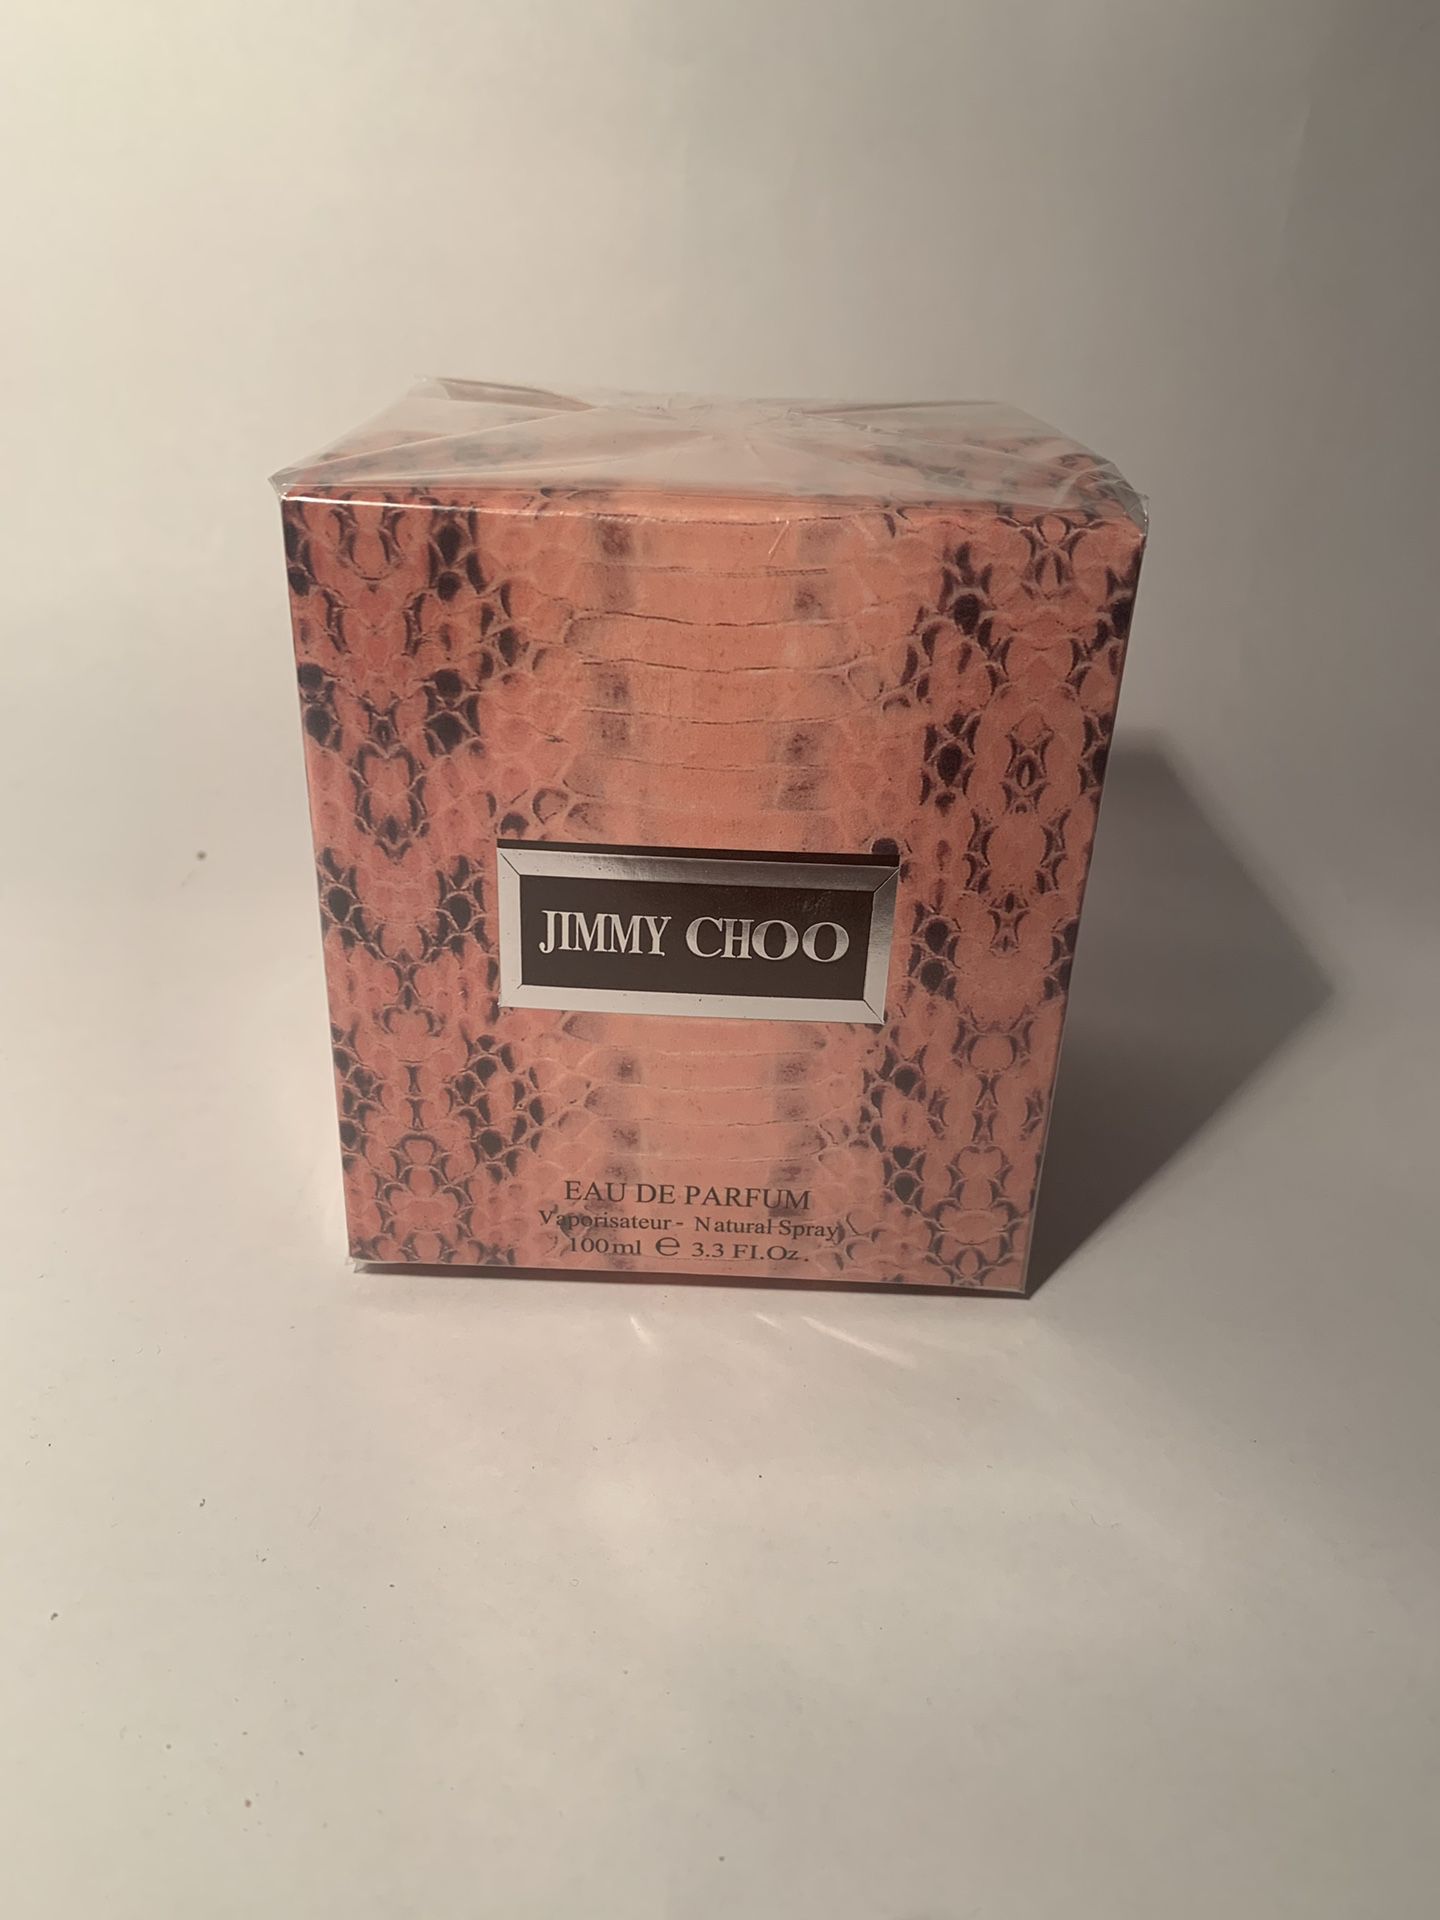 Jimmy choo women’s perfume